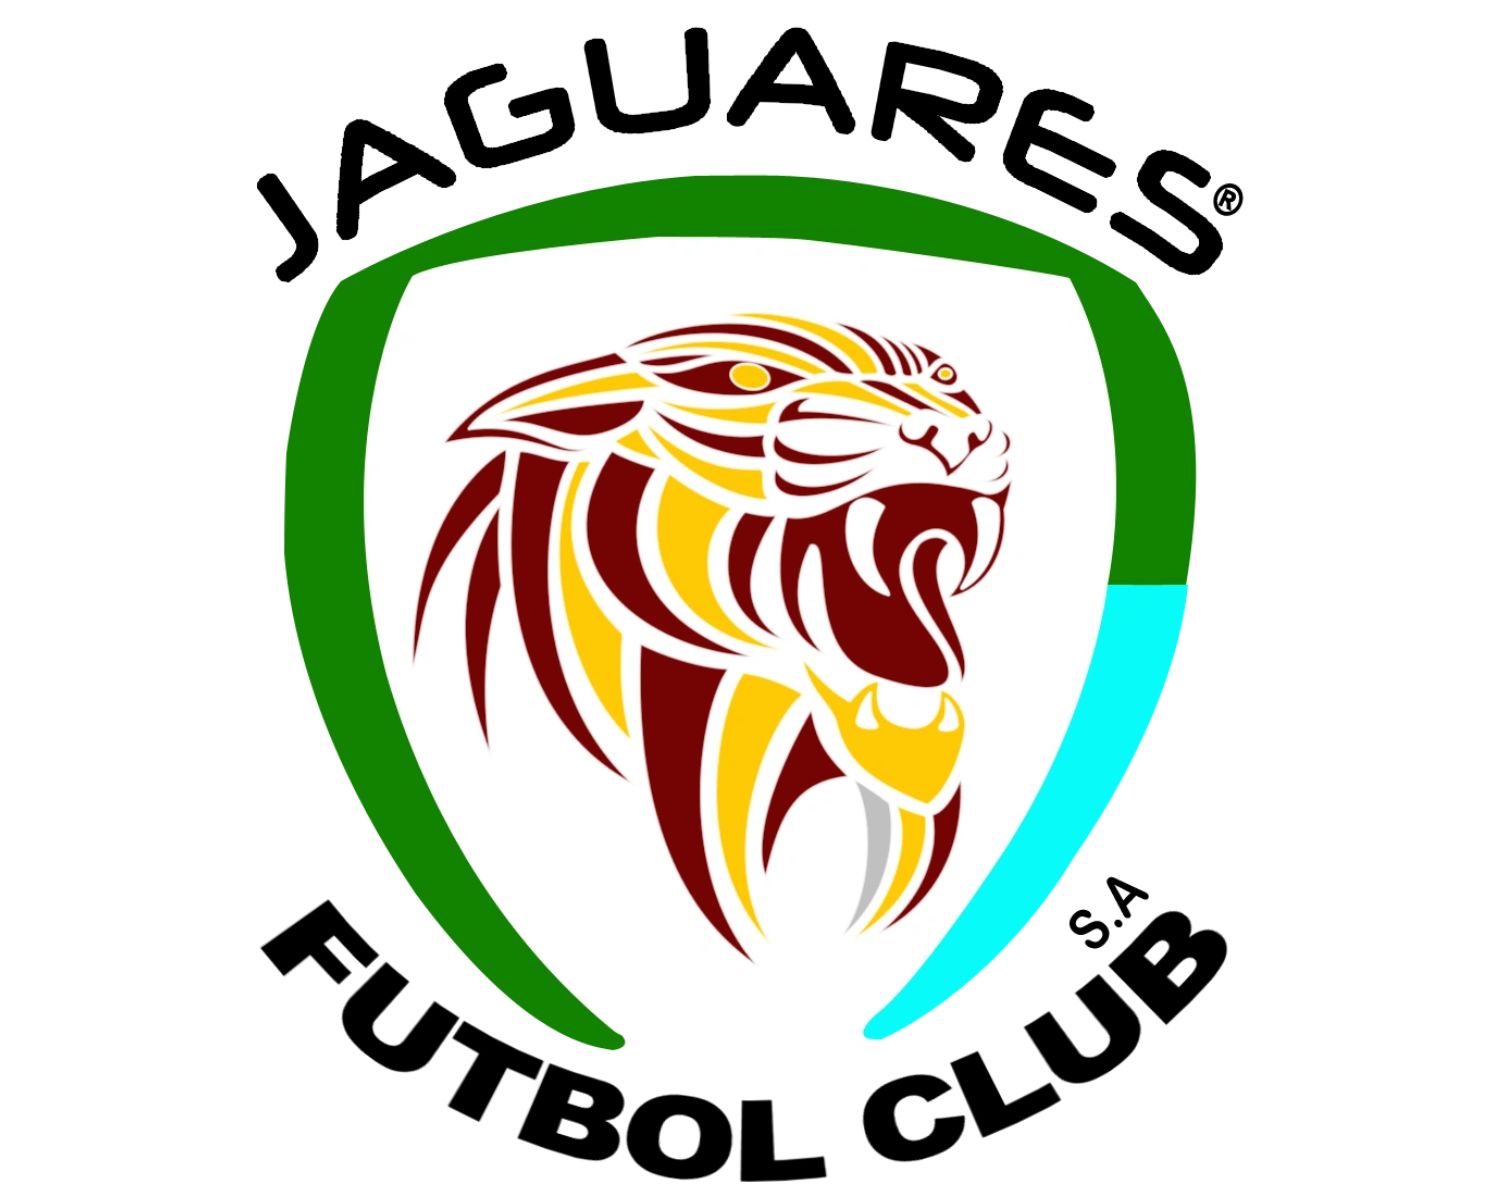 jaguares-de-cordoba-15-football-club-facts